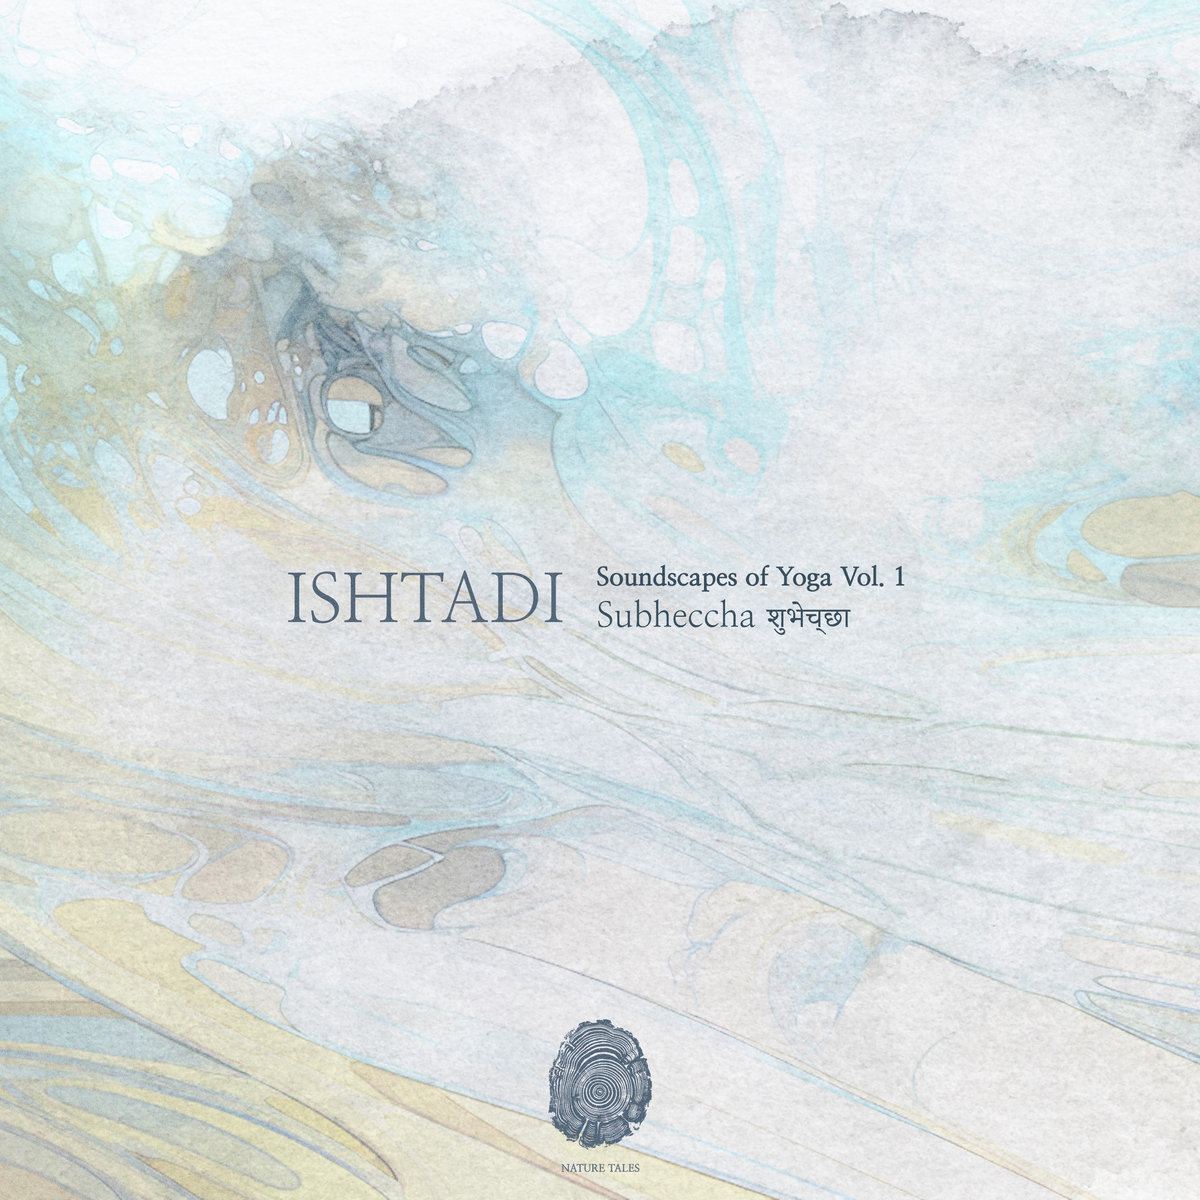 Ishtadi - Soundscapes of Yoga